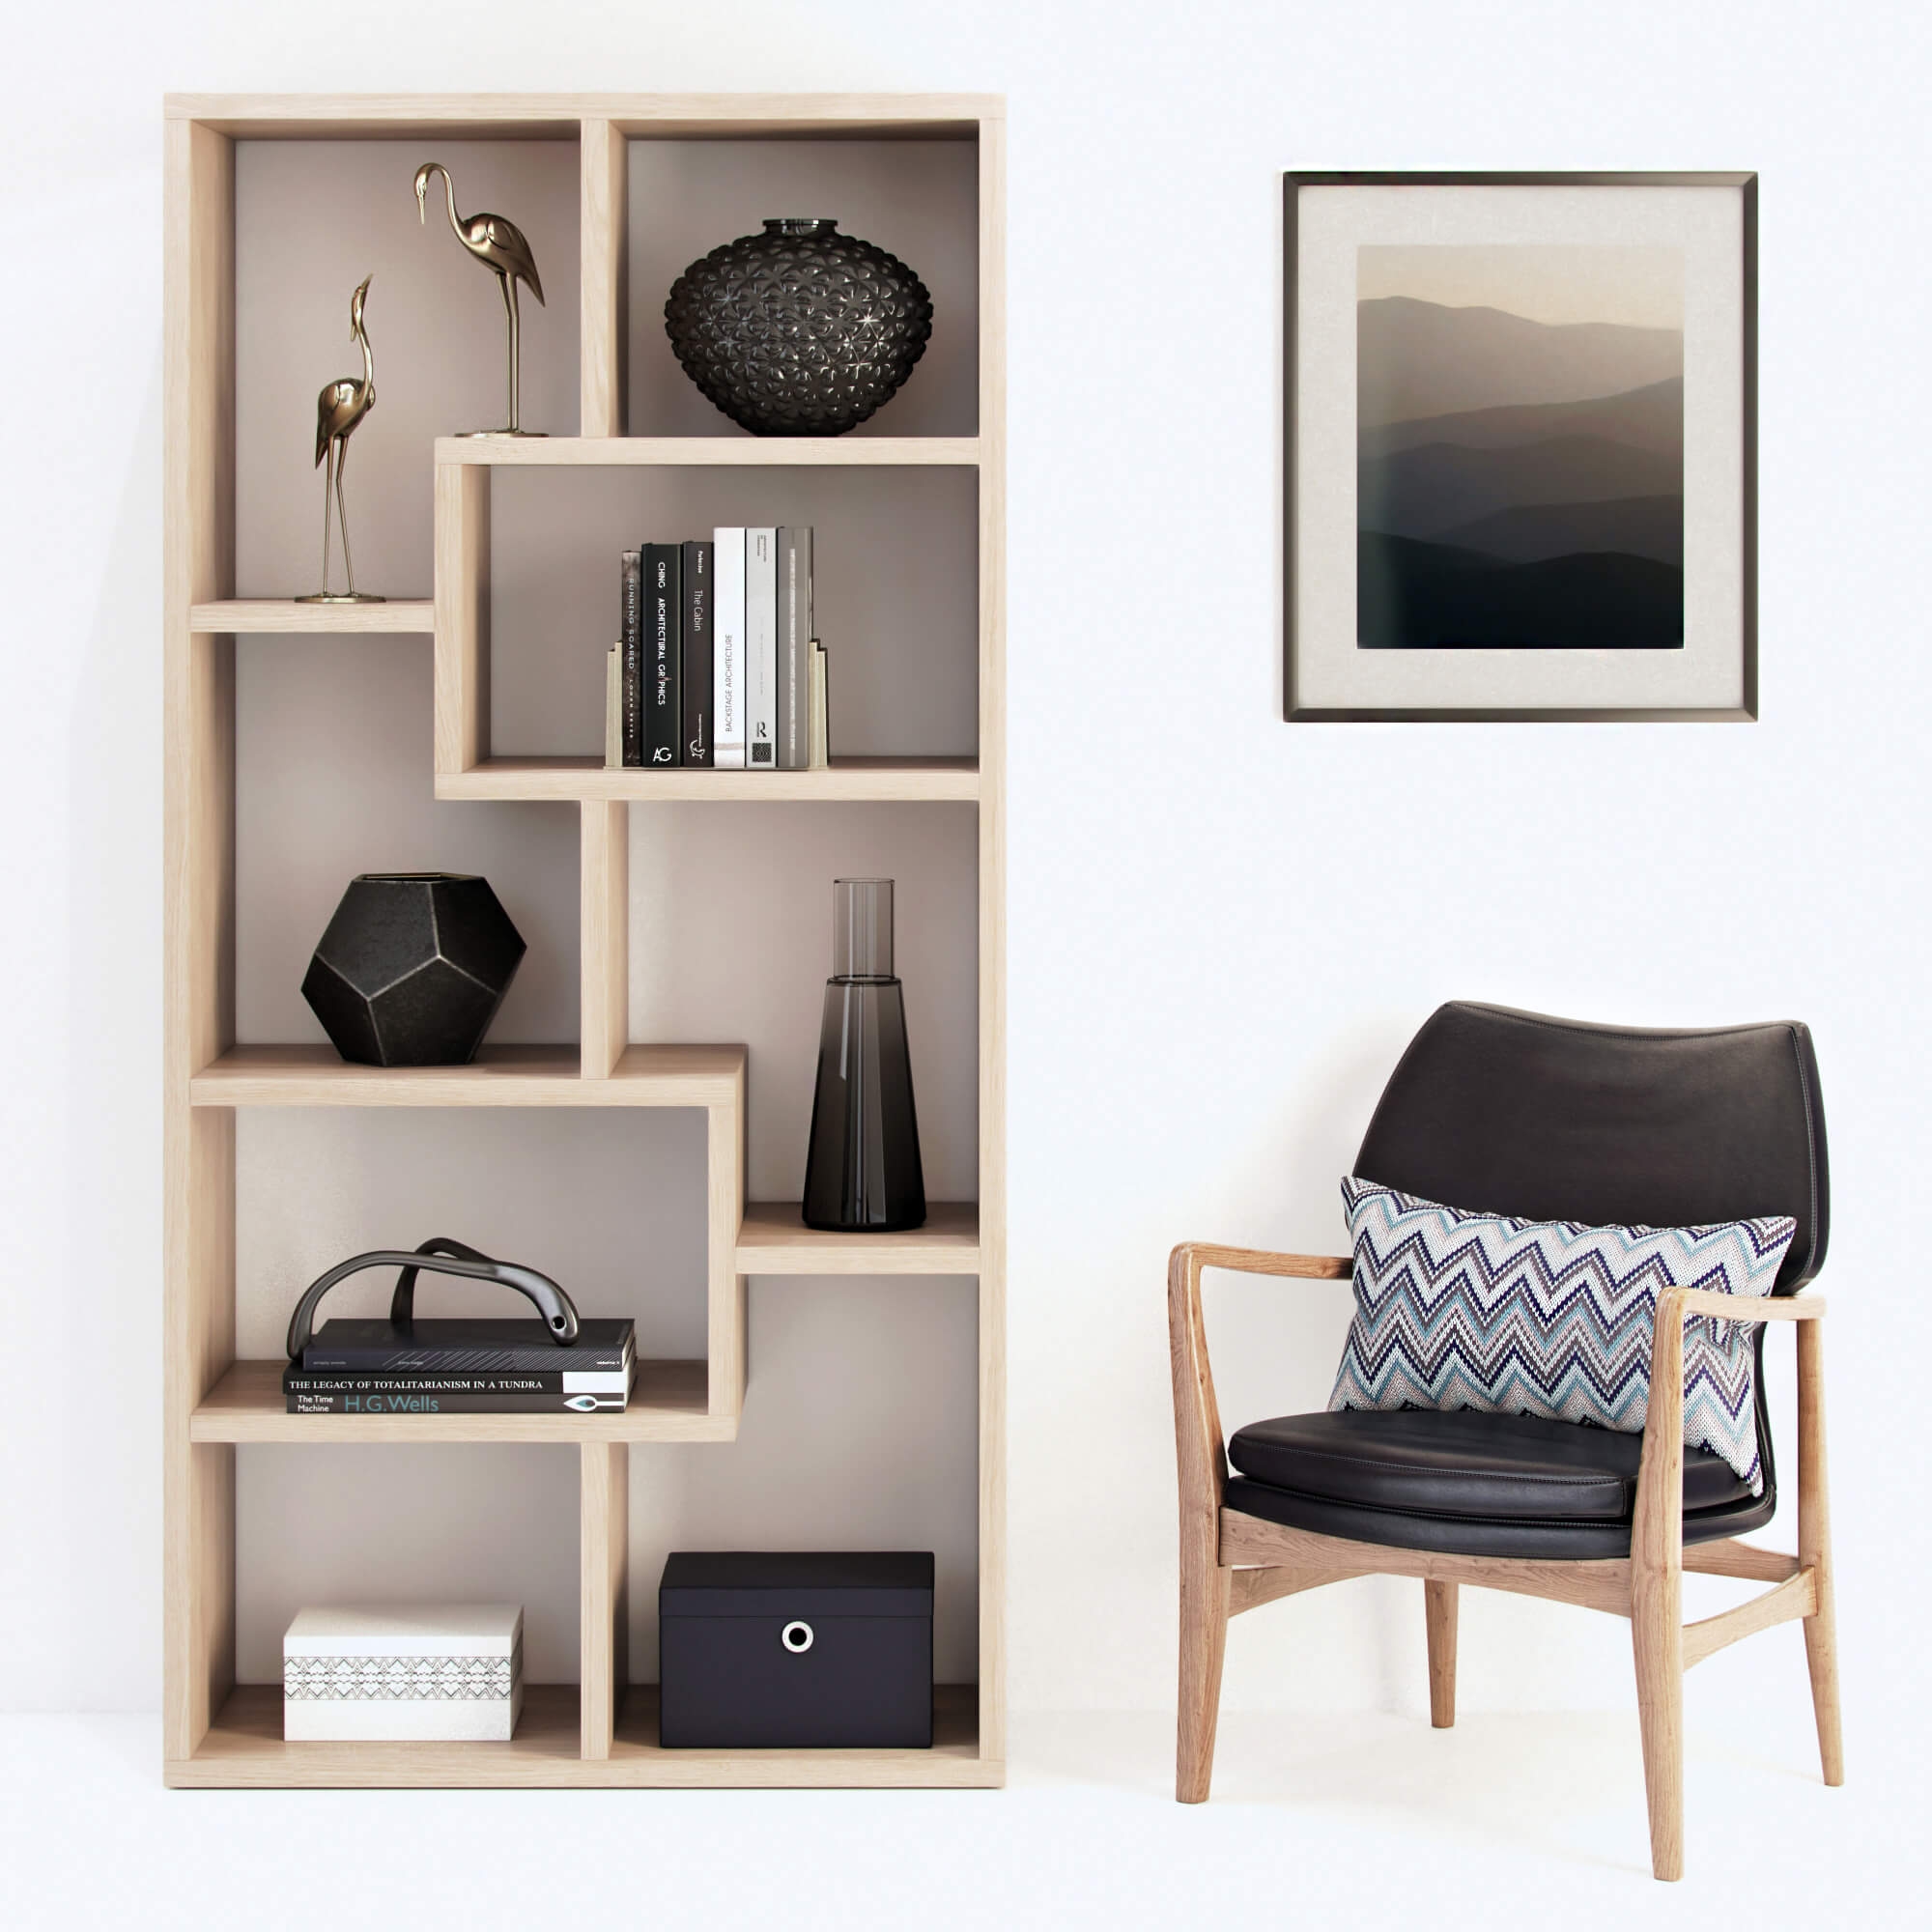 Armchairs / Shelves / Decorative set 1